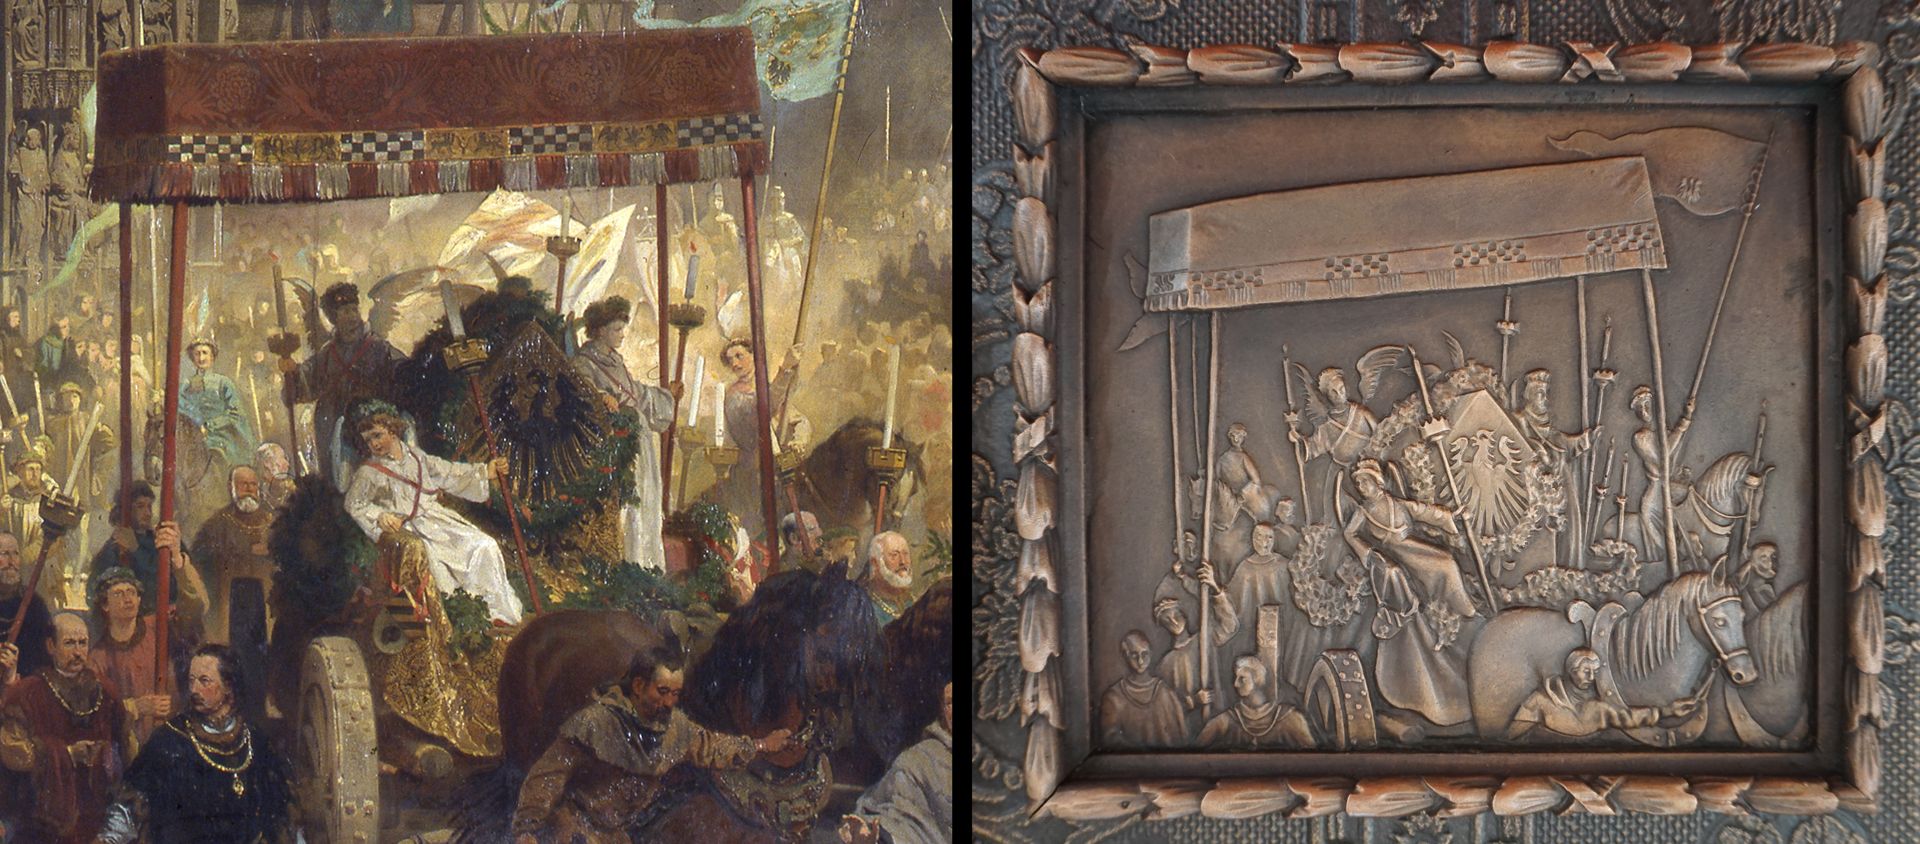 Paul Ritter Grabstätte Detailvergleich aus "Die Einbringung der Reichskleinodien", links Gemäldedetail, rechts gerahmtes Detail auf dem Epitaph